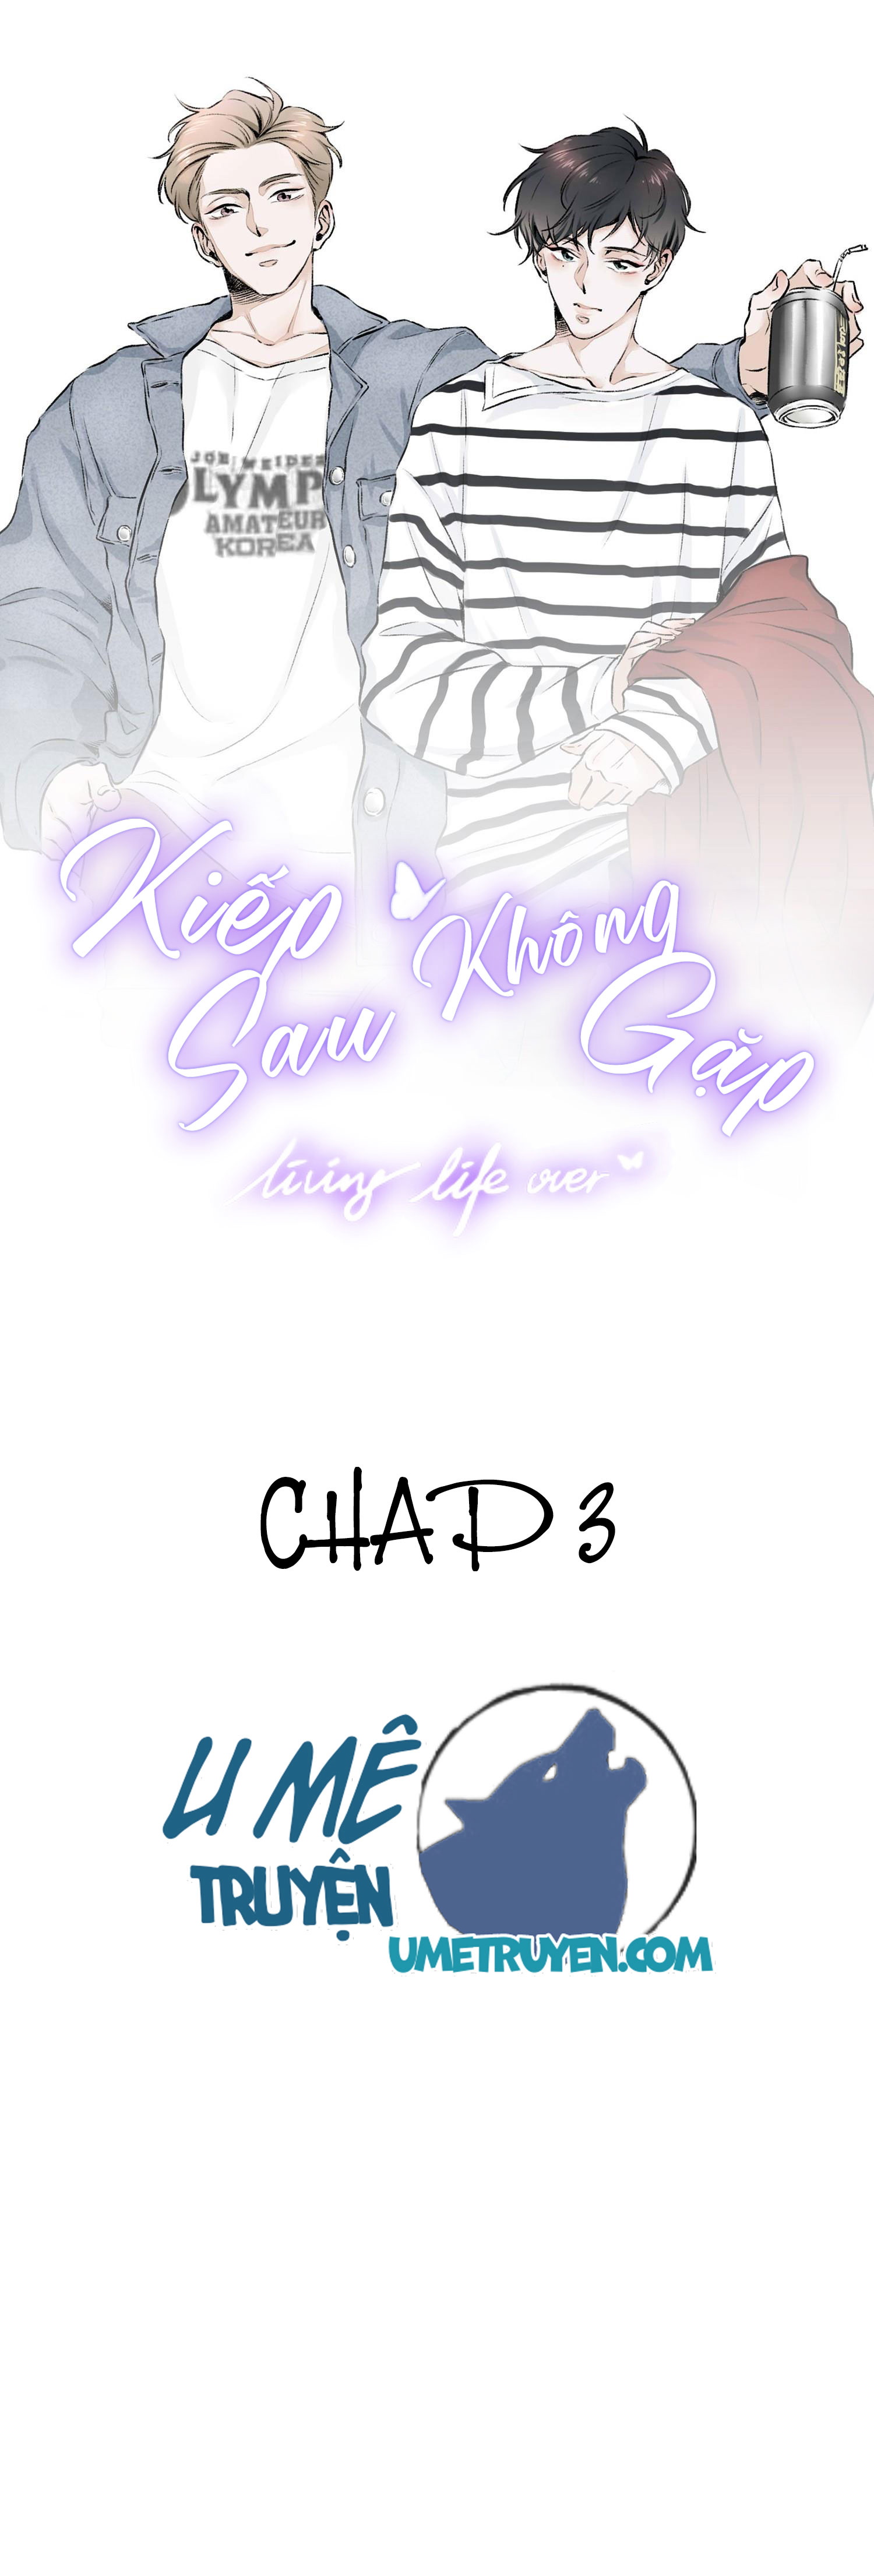 kiep-sau-khong-gap--chap-3-0